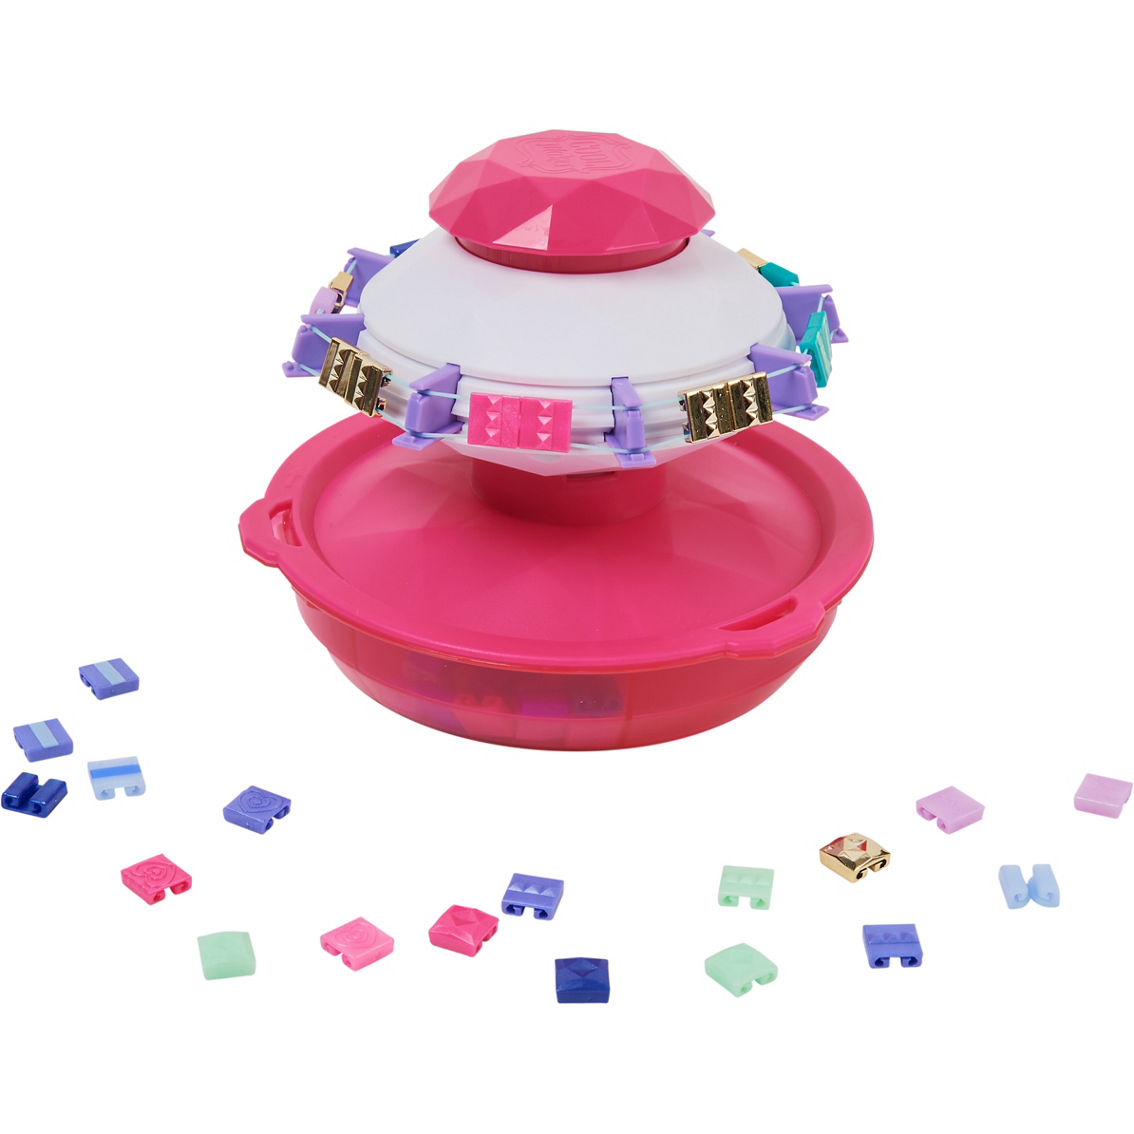 Spin Master Cool Maker Pop Style Bracelet Maker Kit - Image 2 of 3